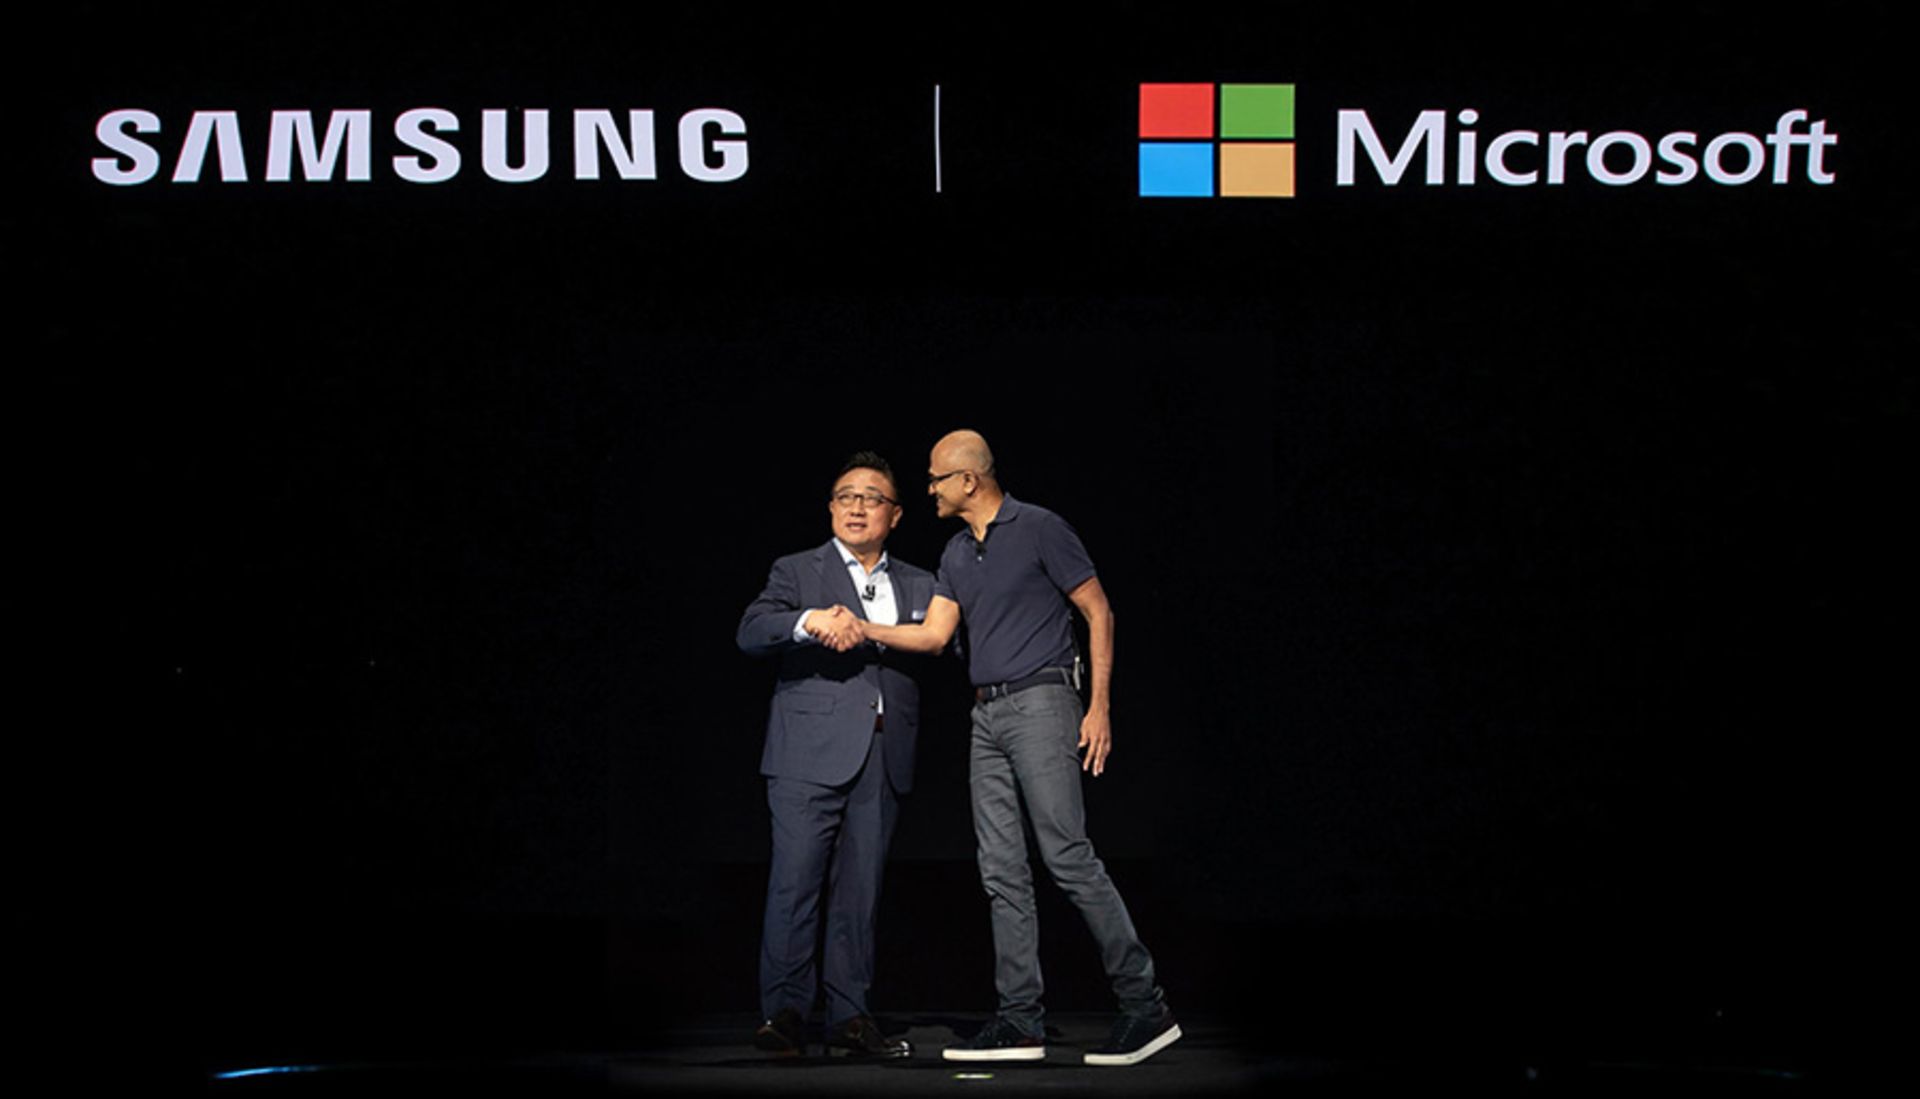 همکاری مایکروسافت و سامسونگ / Samsung Microsoft partnership 